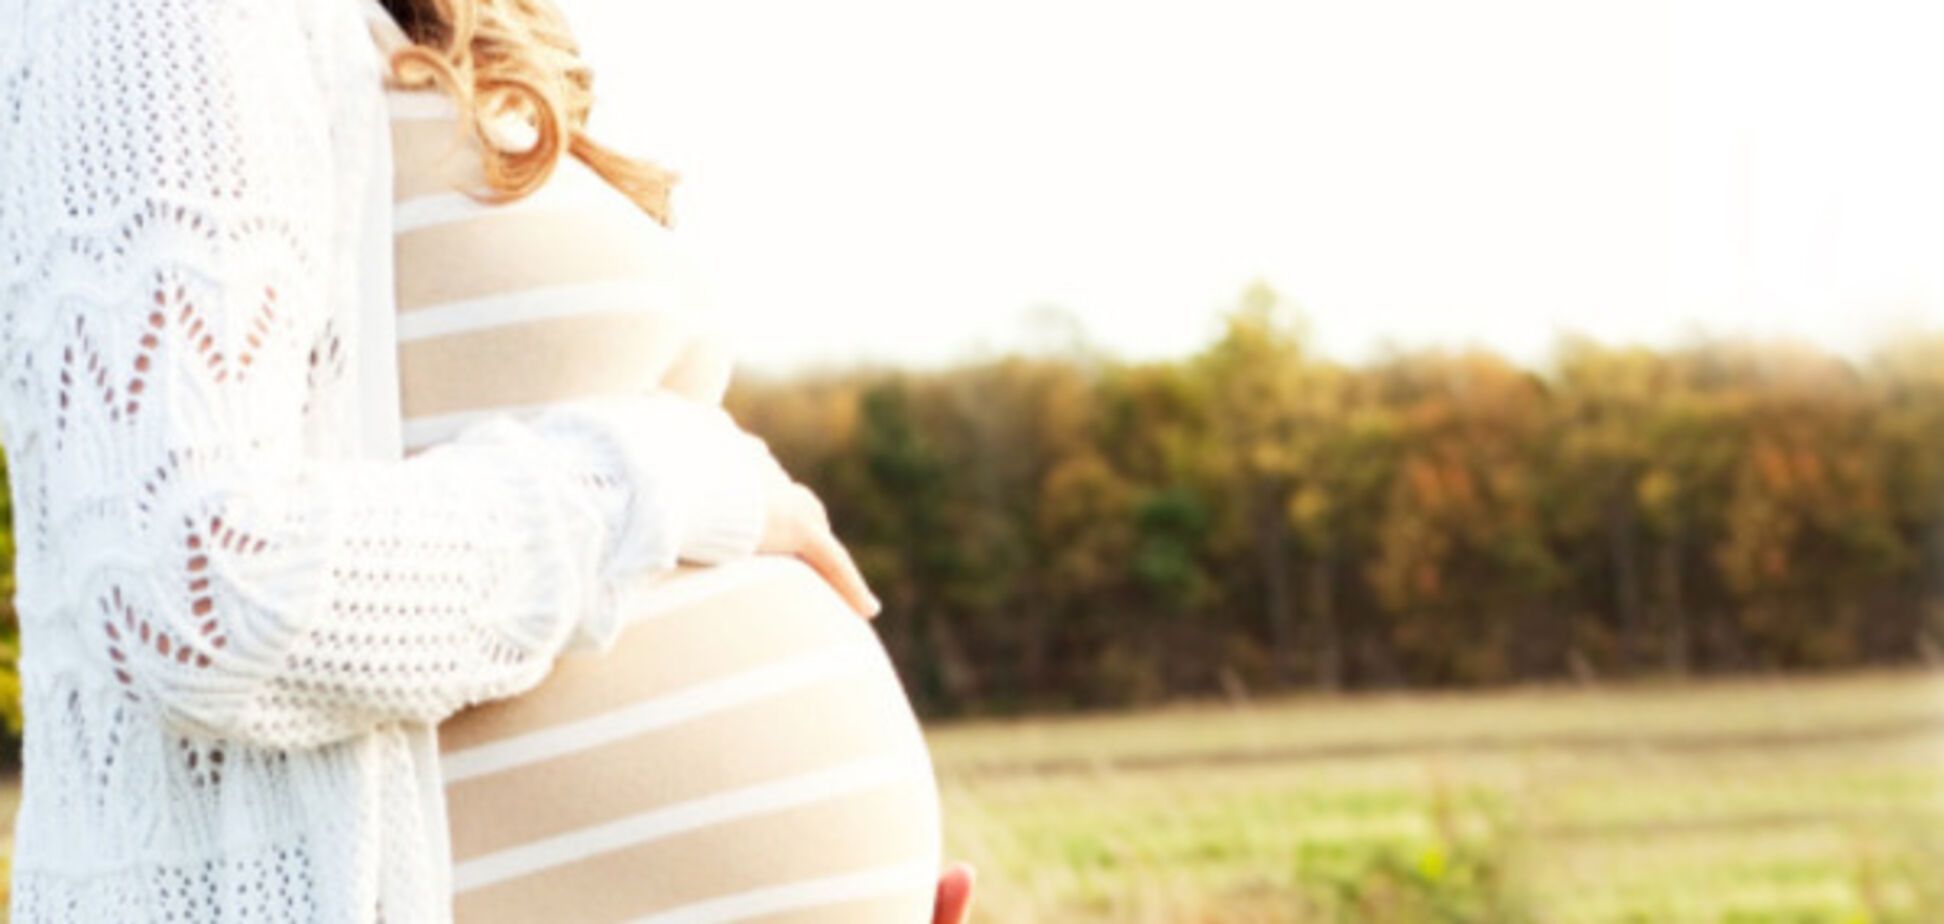 'Неделю назад я узнала, что на 8-м месяце беременности': девушка поведала о 'шокирующем' открытии